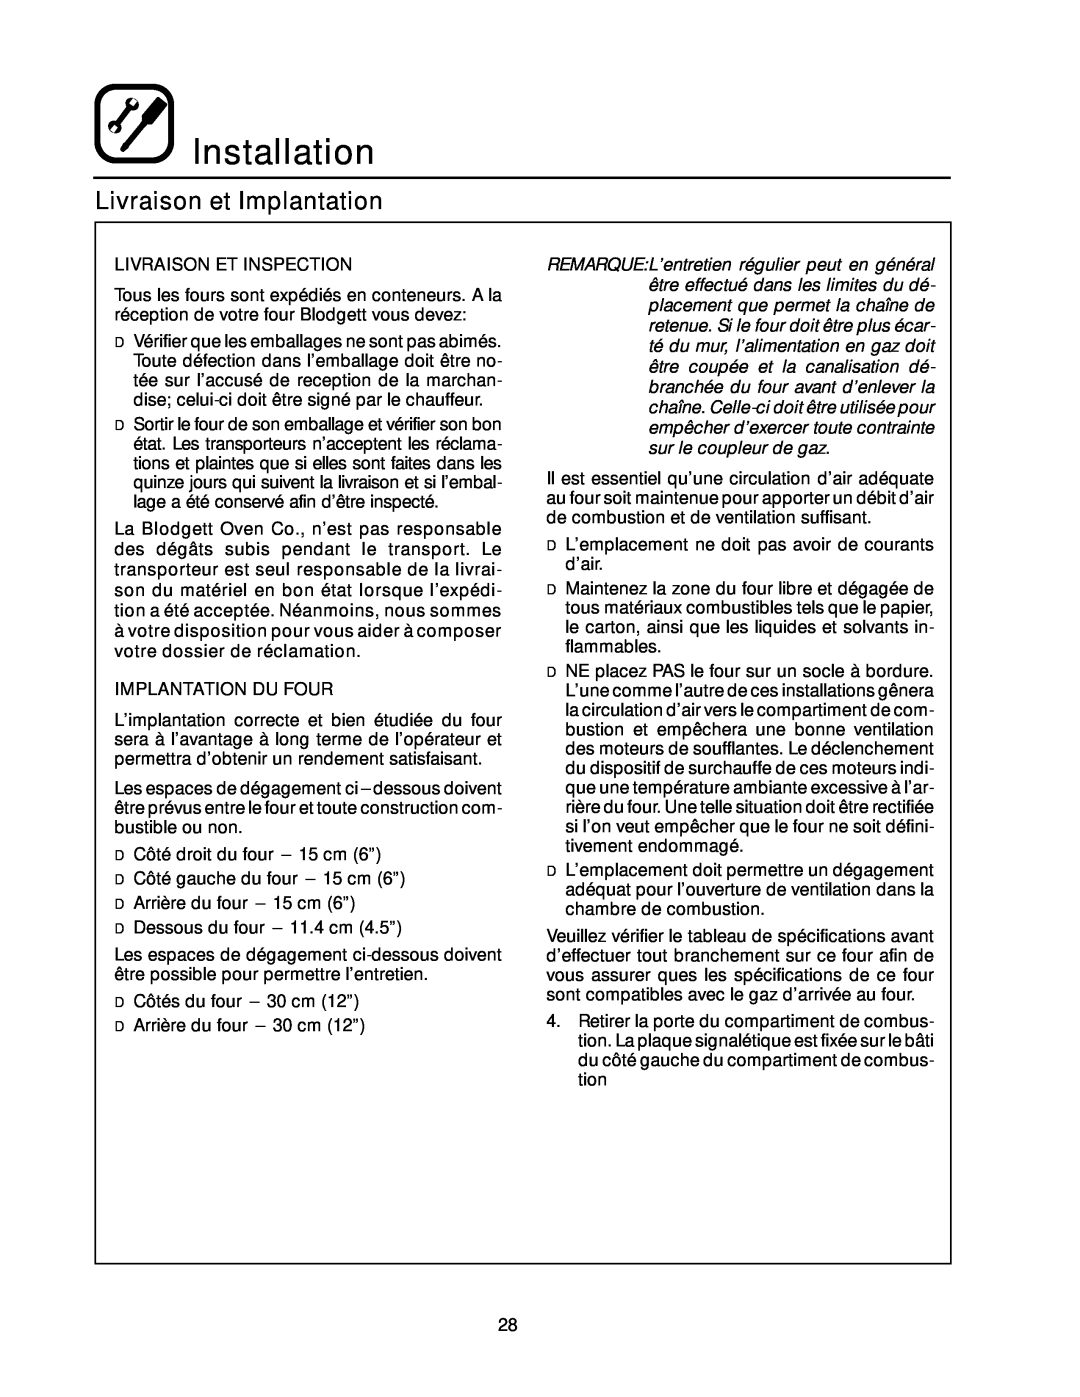 Blodgett RE Series manual Livraison et Implantation, Installation, Livraison Et Inspection, Implantation Du Four 